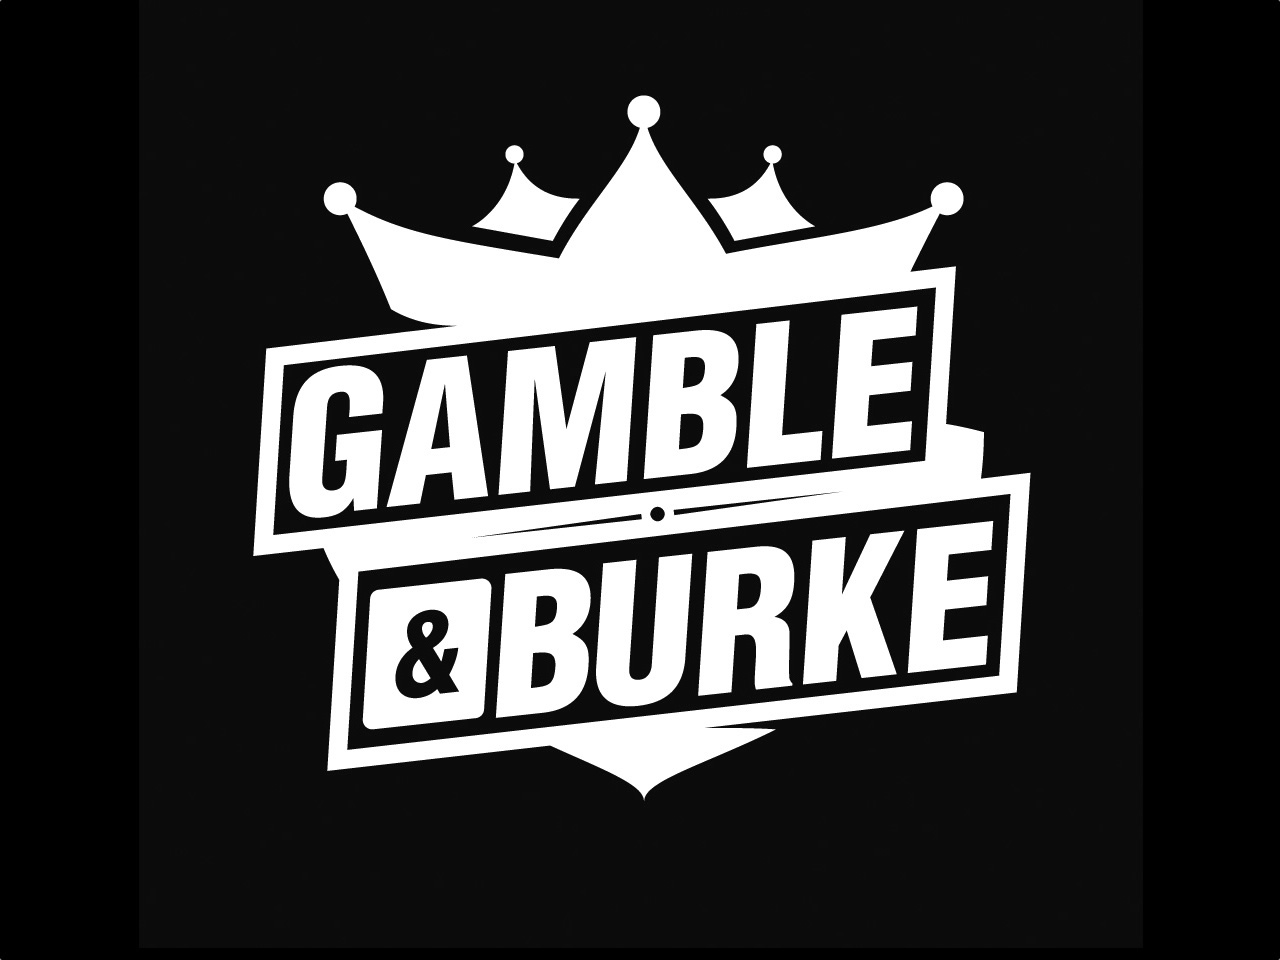 Gamble & Burke